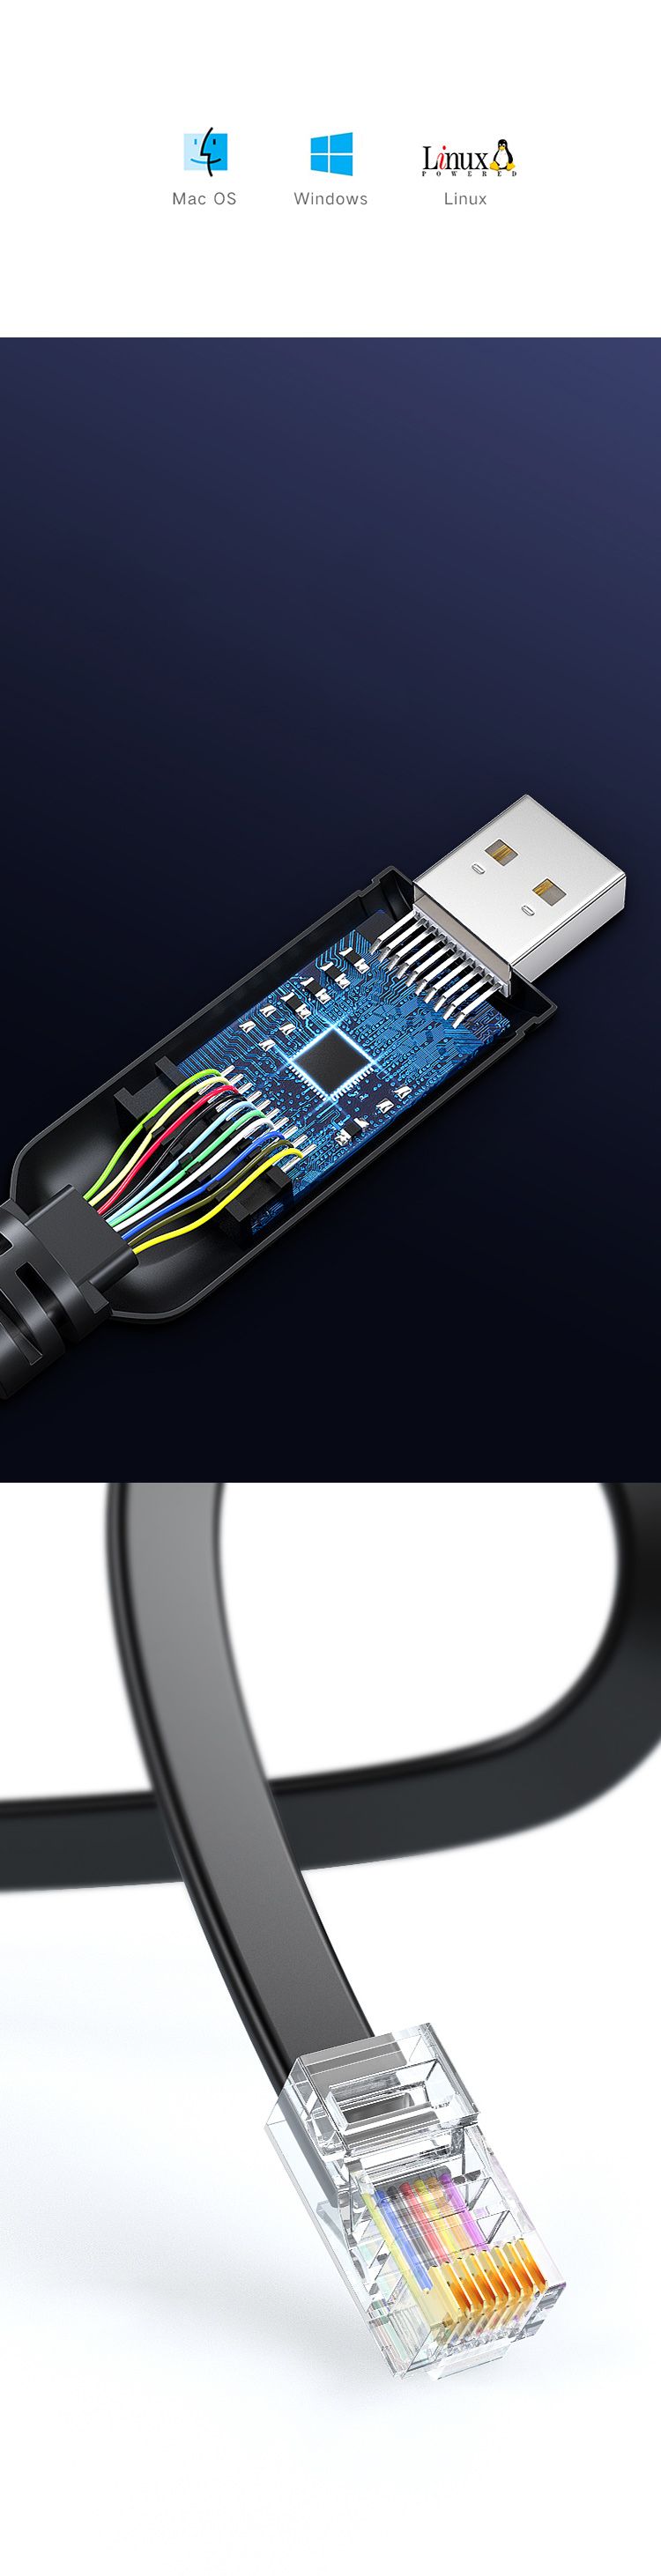 BIAZE-HX25-USB-to-RJ45-Console-Cable-18m-Converter-TP-LINK-Router-Configuration-Conversion-Cable-1647388